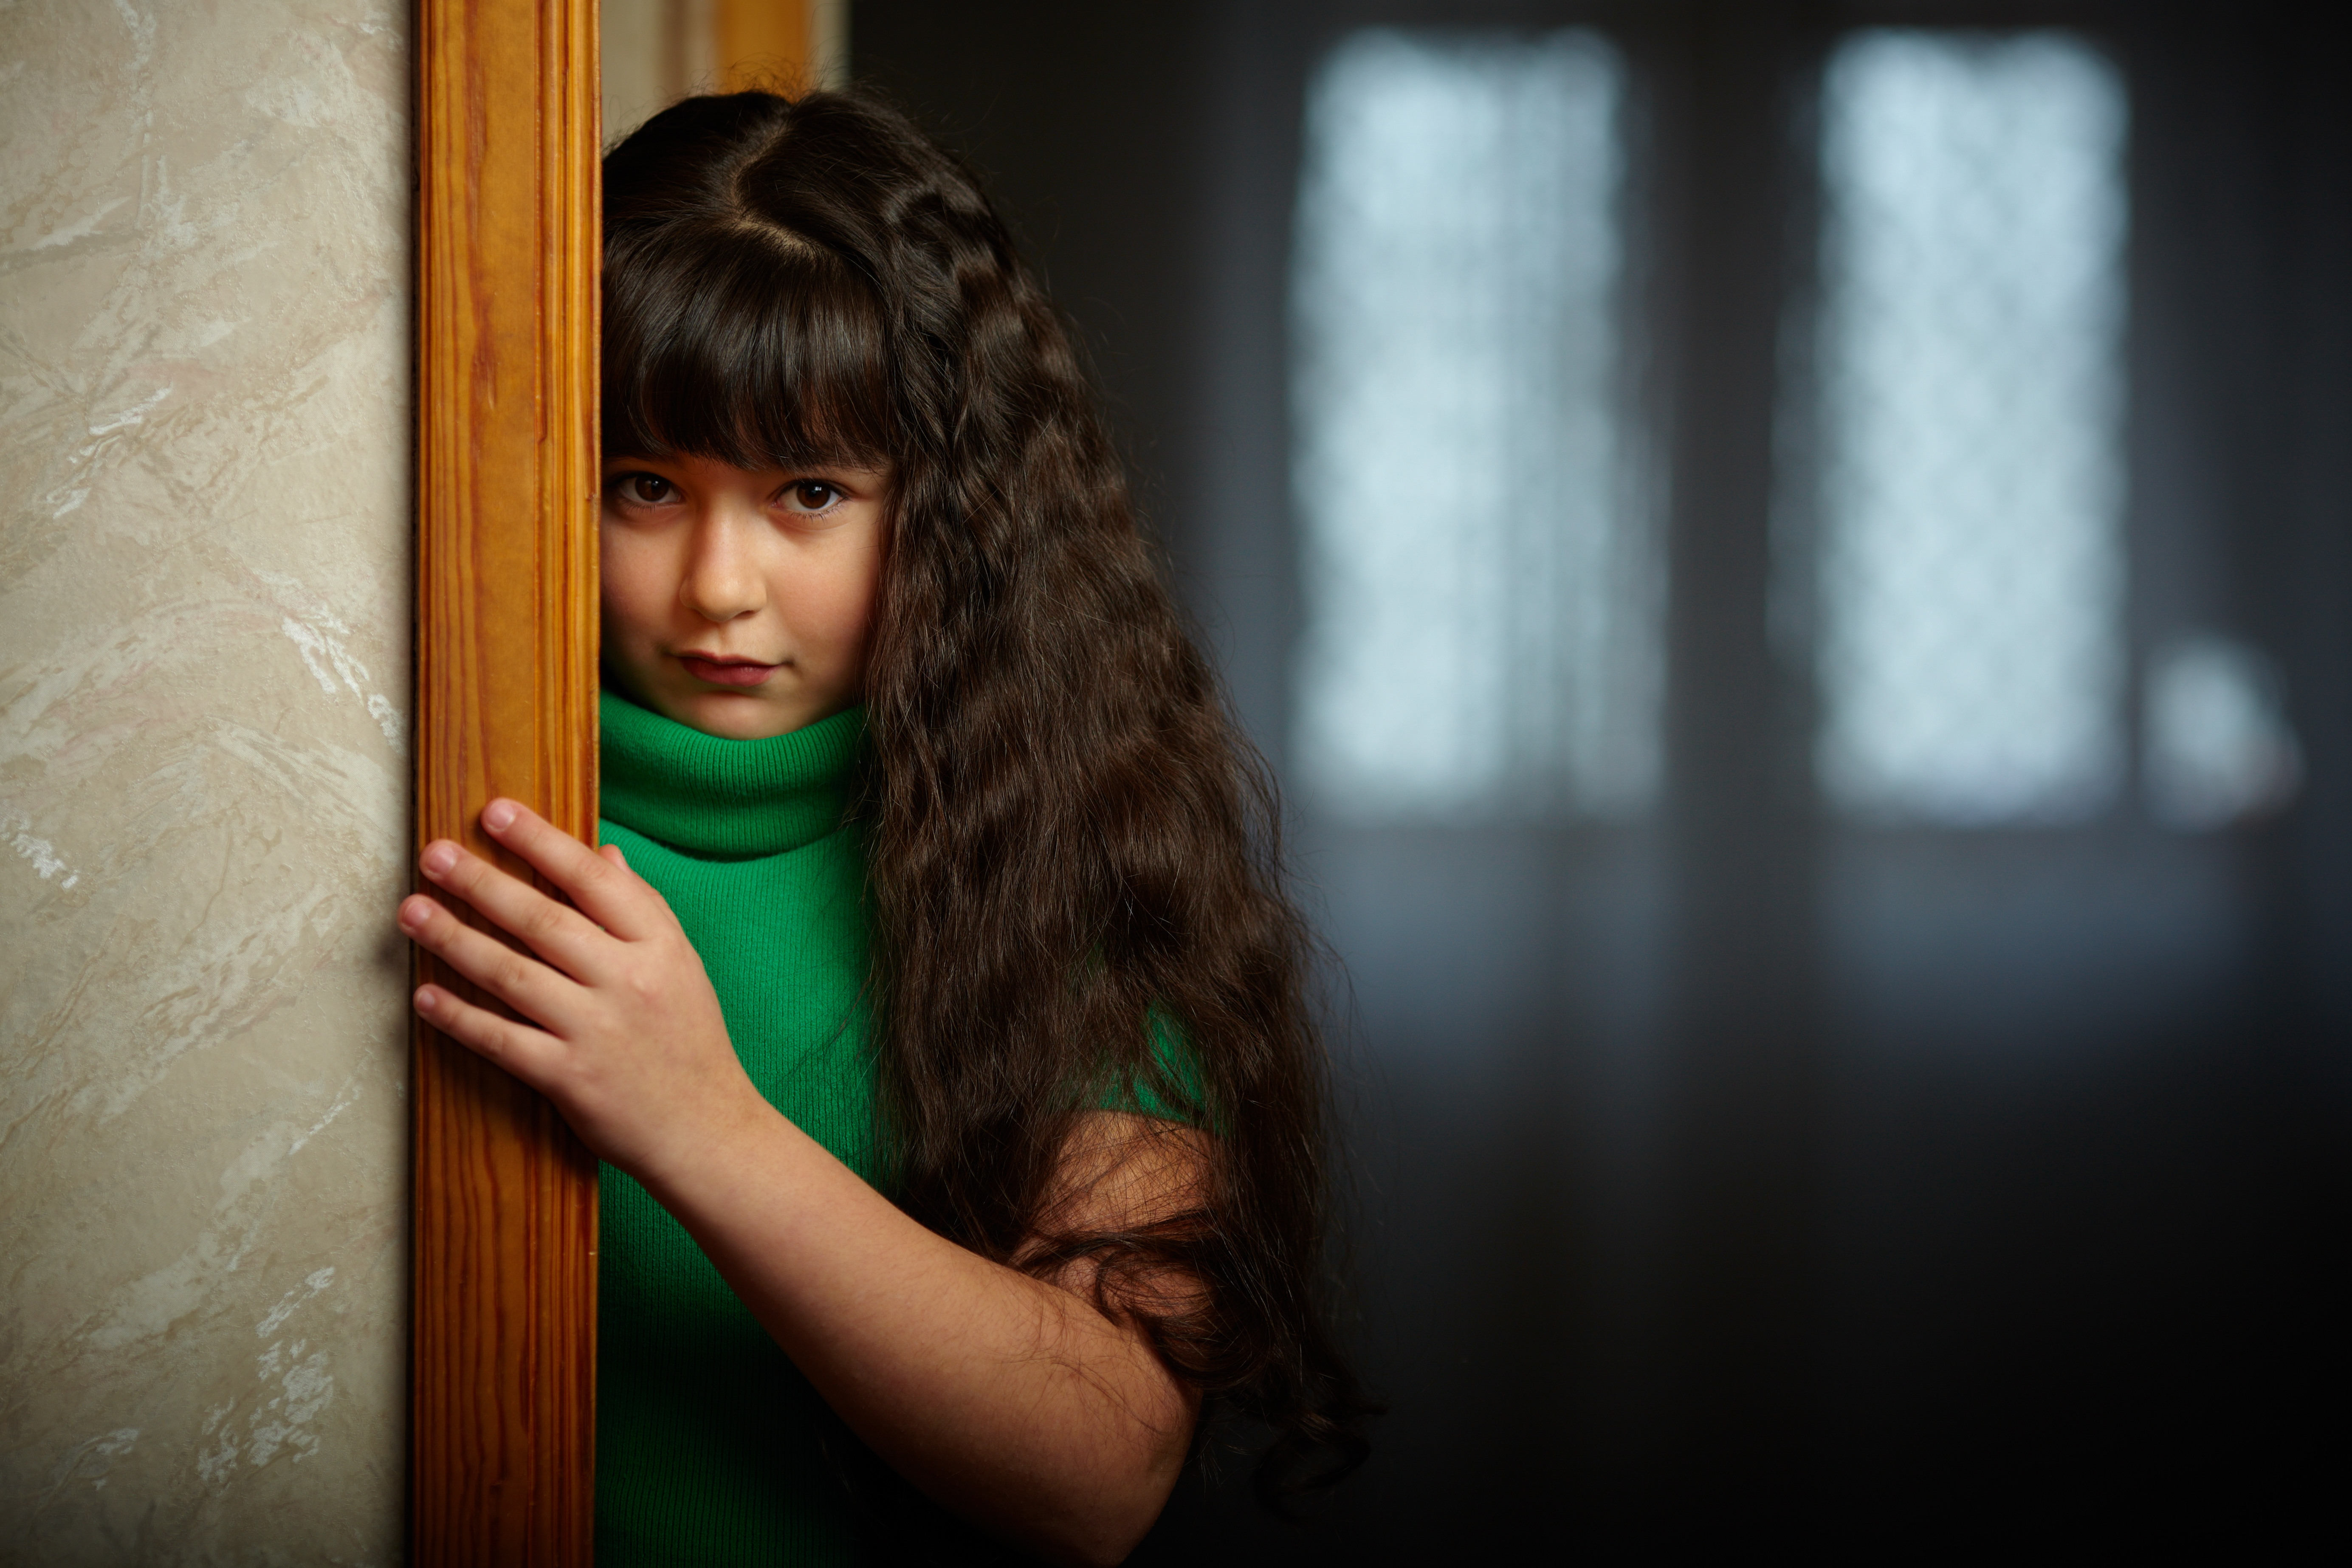 Sad girl near door | Source: Shutterstock.com